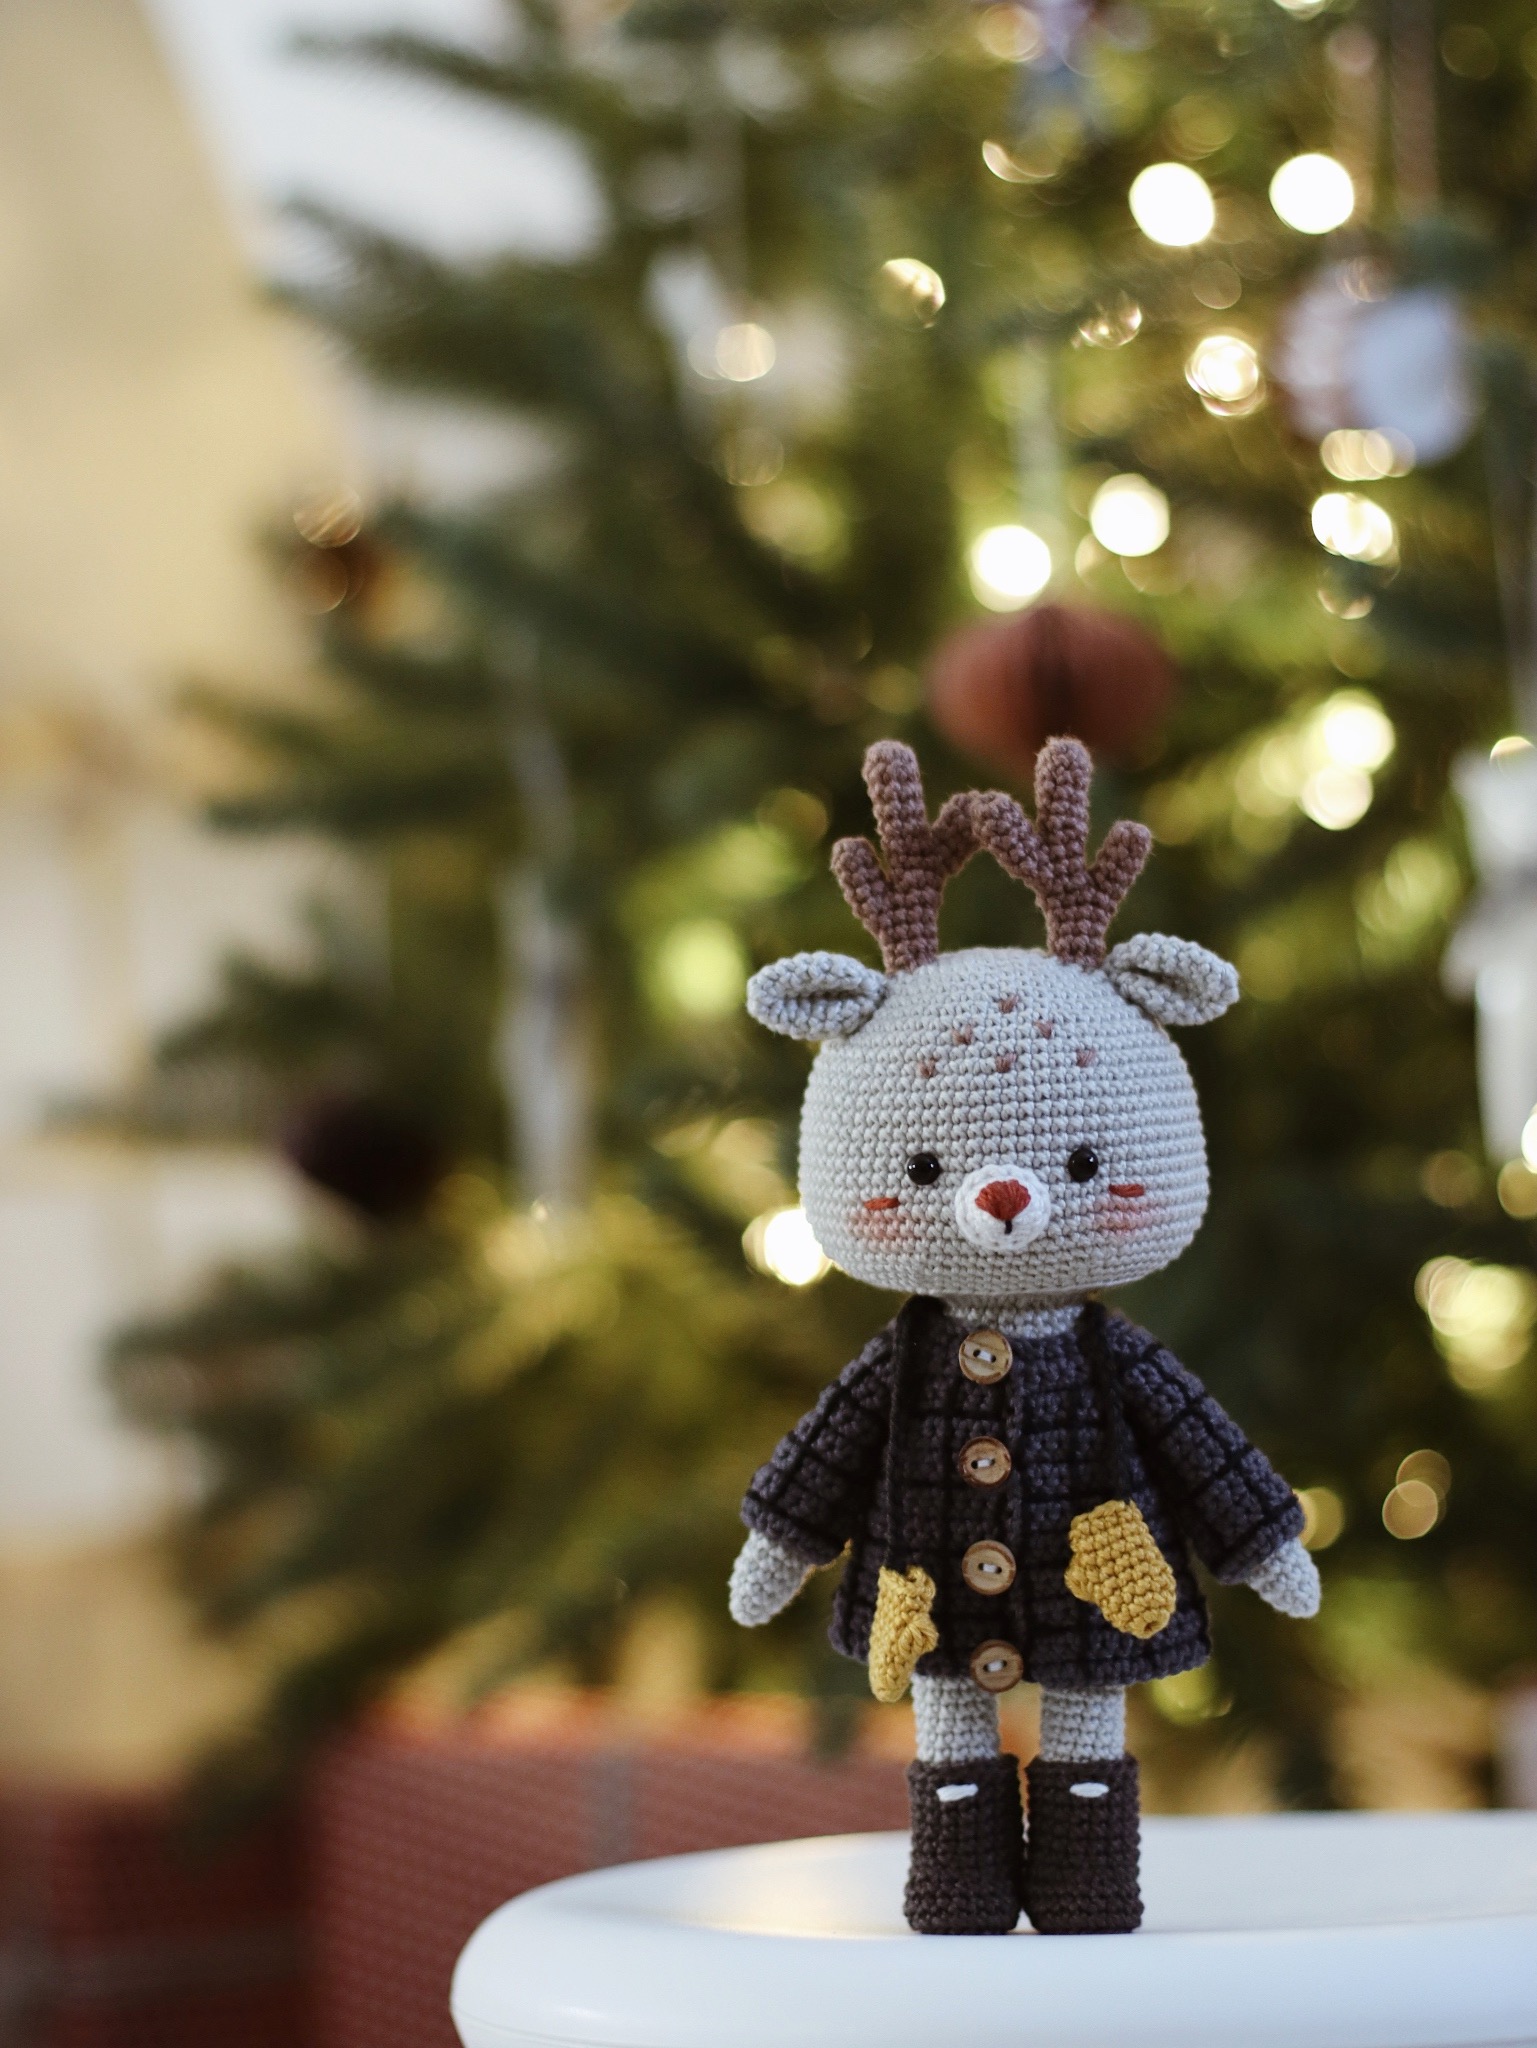 Ellie the Little Reindeer Amigurumi Crochet Pattern – Create Your Own Adorable Reindeer | Hainchan